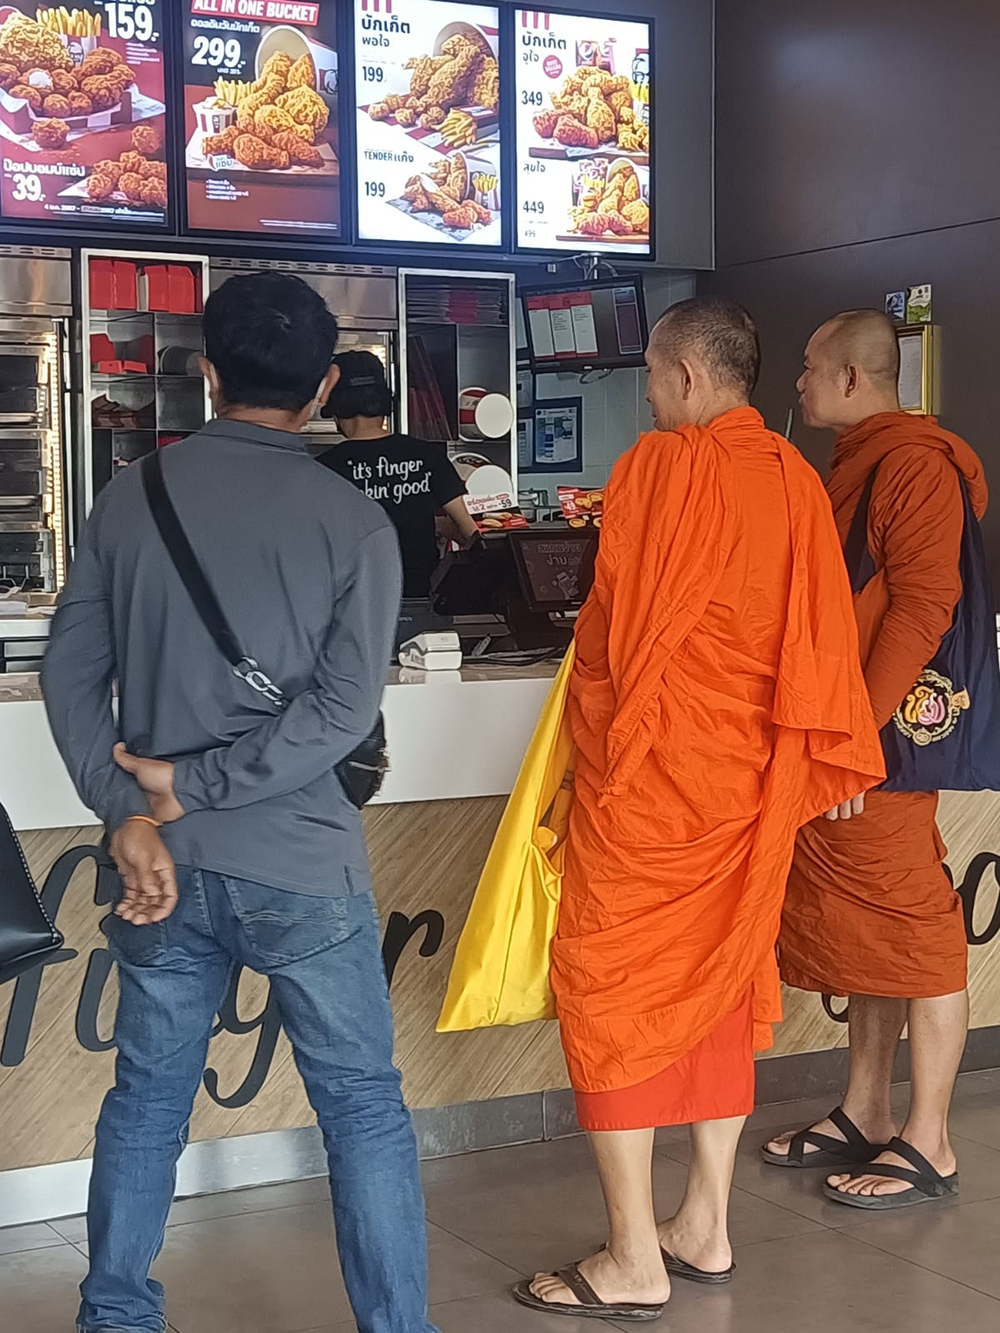 Monks eat fast food too